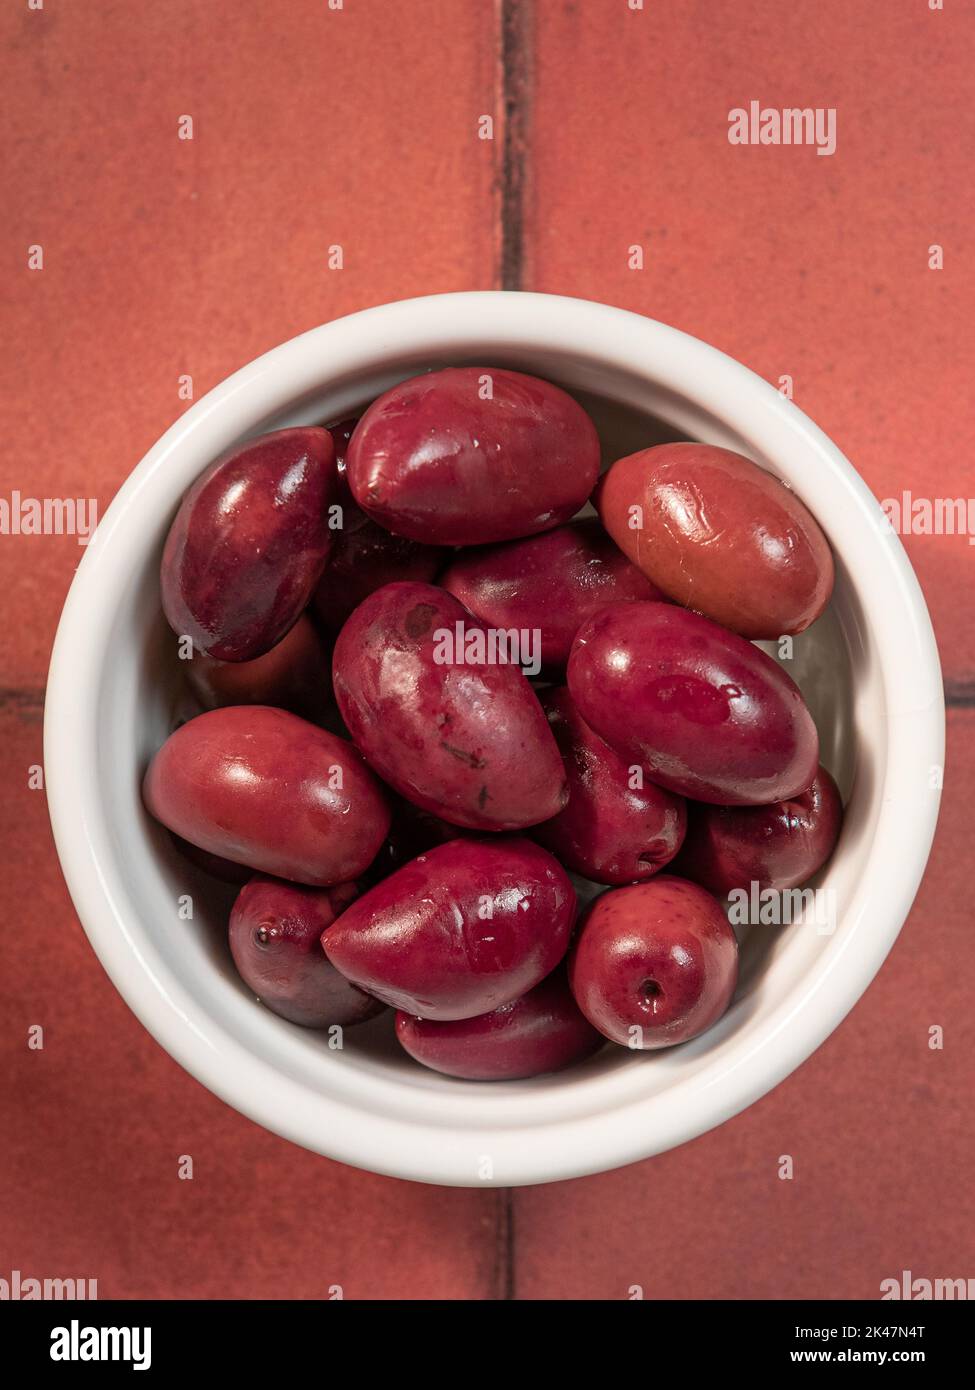 Kalamata olives portrait Stock Photo